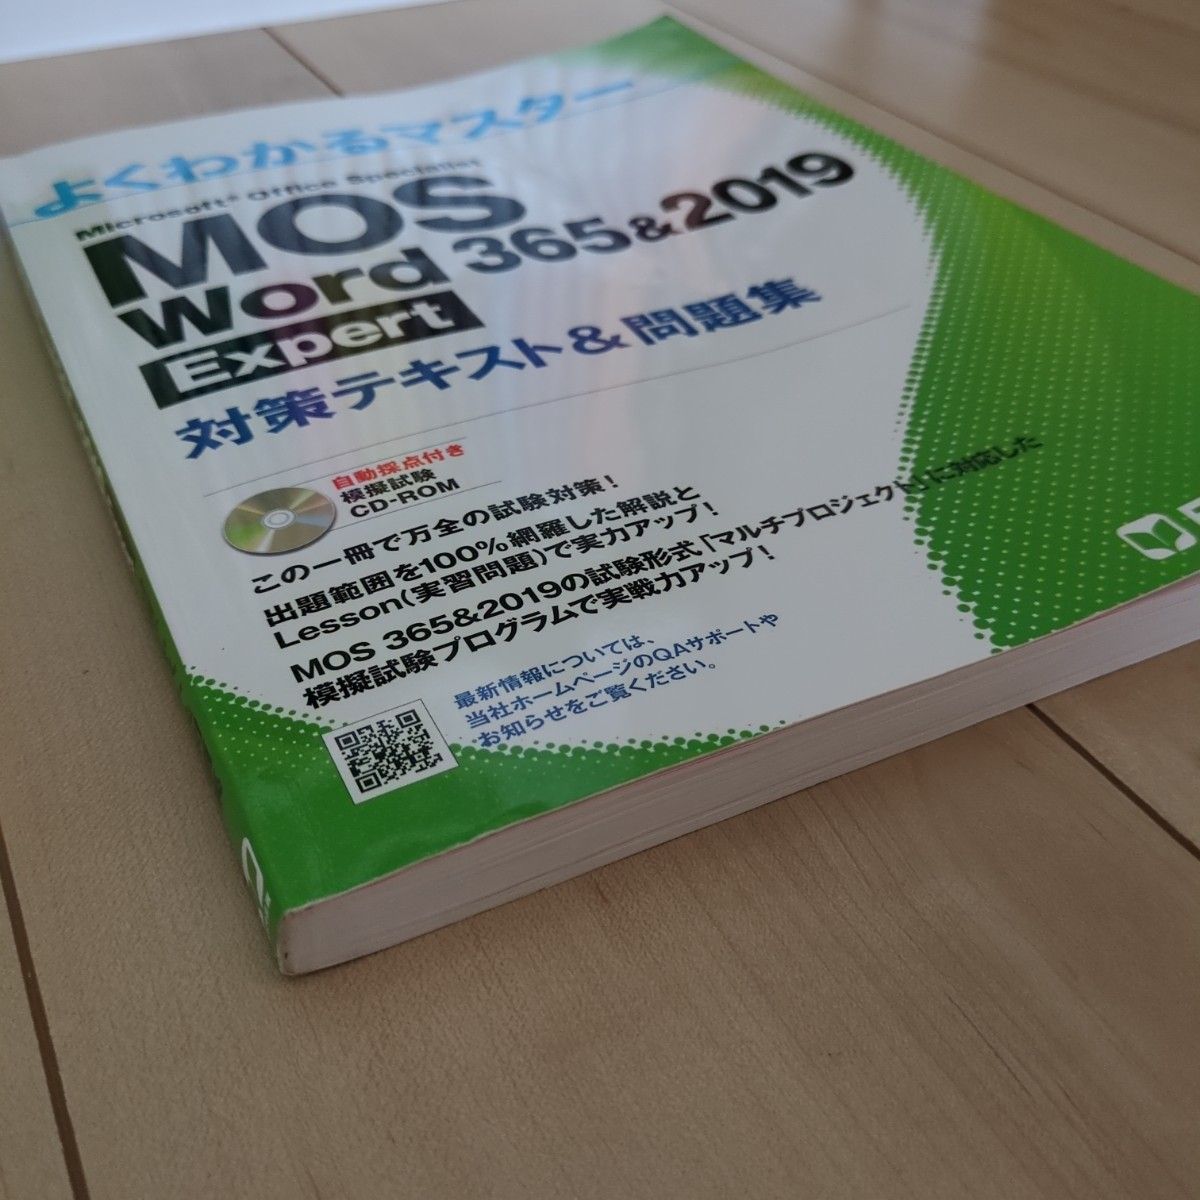 MOS Word 365&2019 Expert対策テキスト&問題集 (よくわかるマスター)